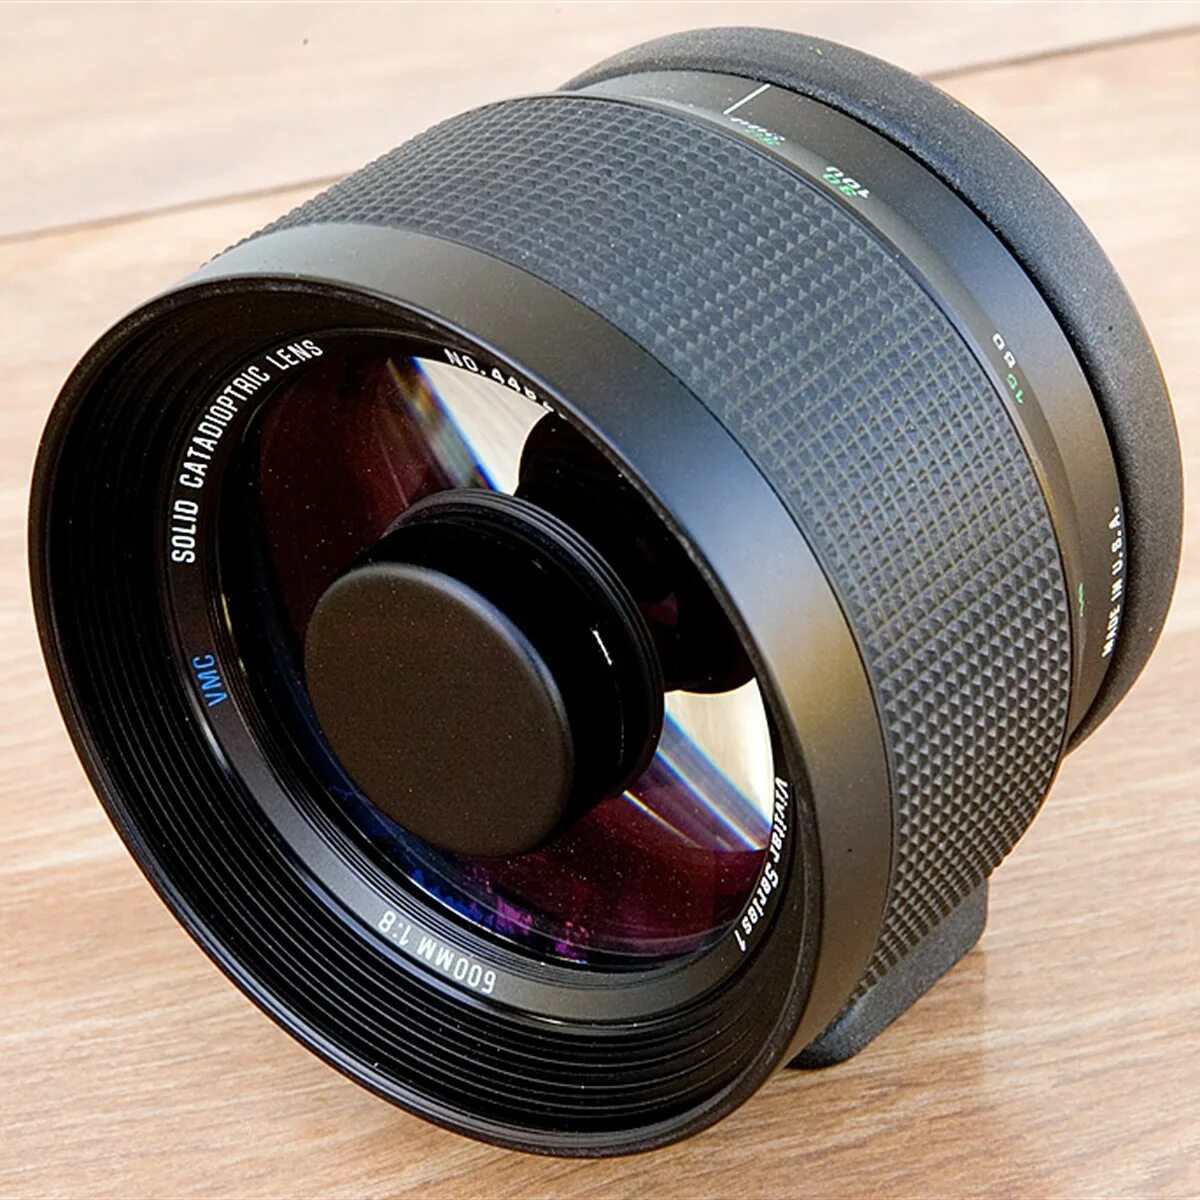 Линза 6 мм. Canon Catadioptric Lens. Объектив Canon 500mm. Объектив Mirror Lens 500mm f8 объектив. Canon 400 Lens.